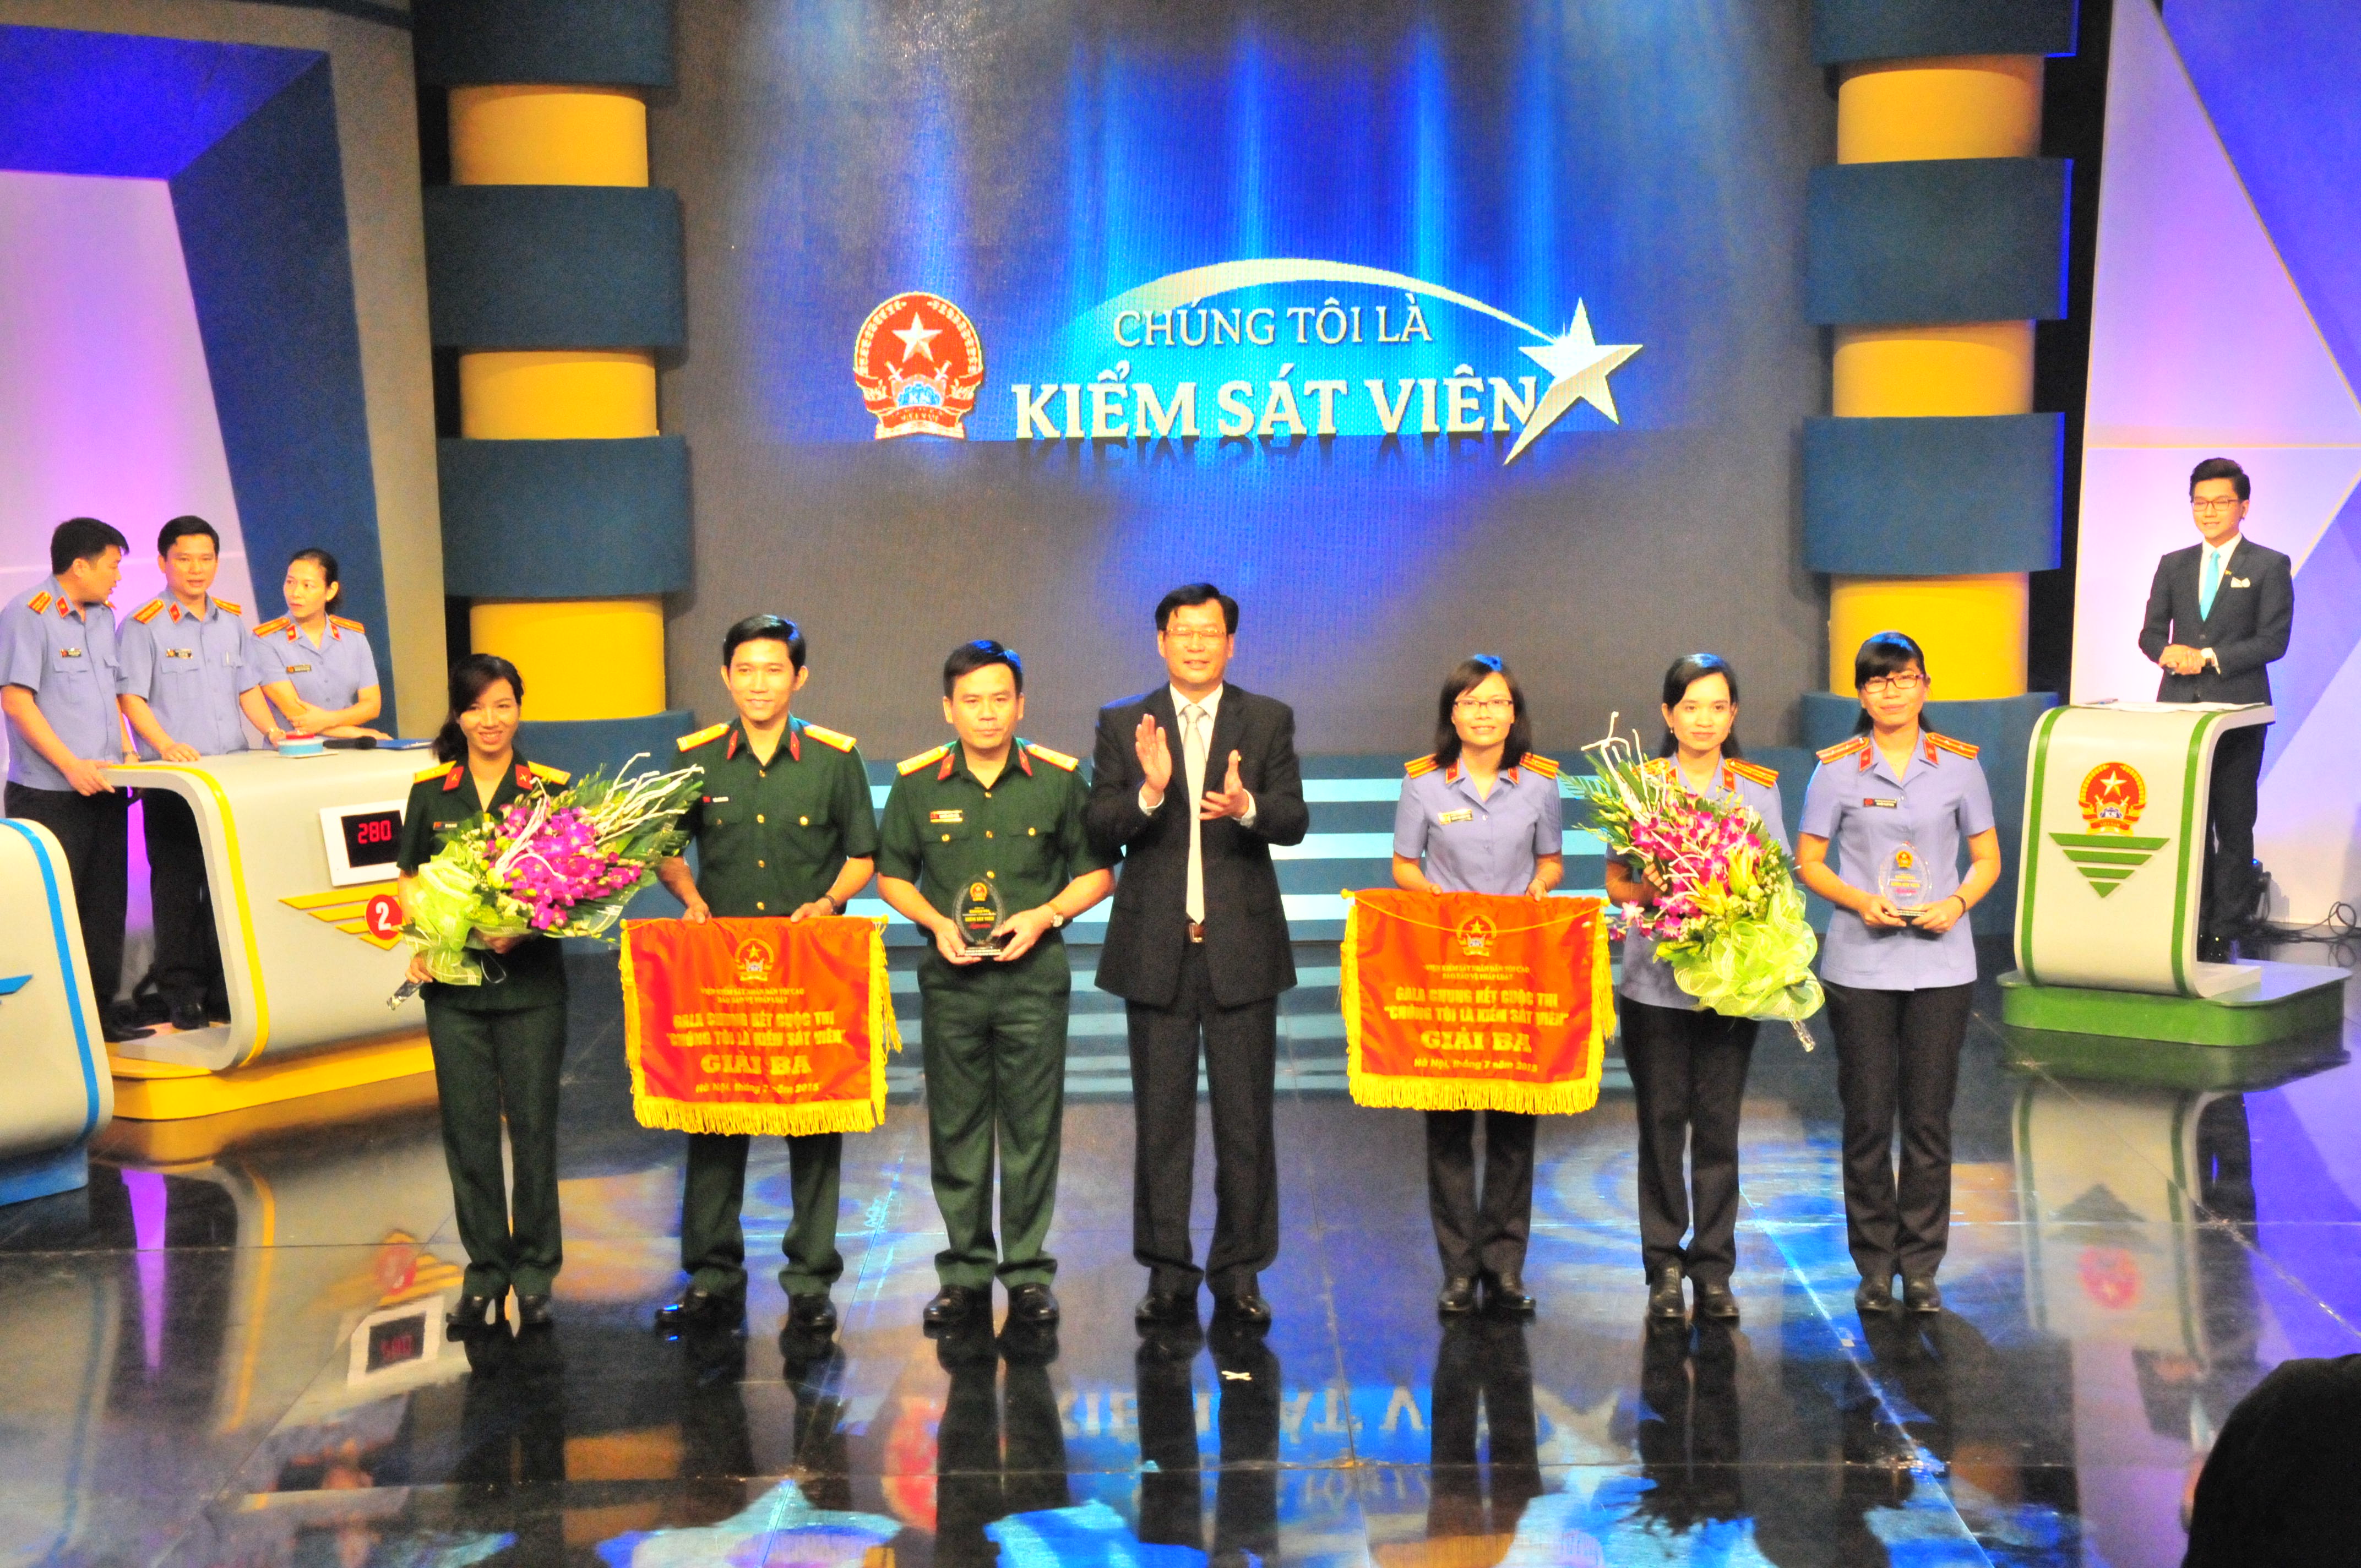 Đồng chí Trần Công Phàn, Phó Viện trưởng VKSNDTC, Trưởng ban chỉ đạo cuộc thi trao giải cho đội thi đến từ VKS Quân sự Quân khu 5 và VKSND tỉnh Tây Ninh